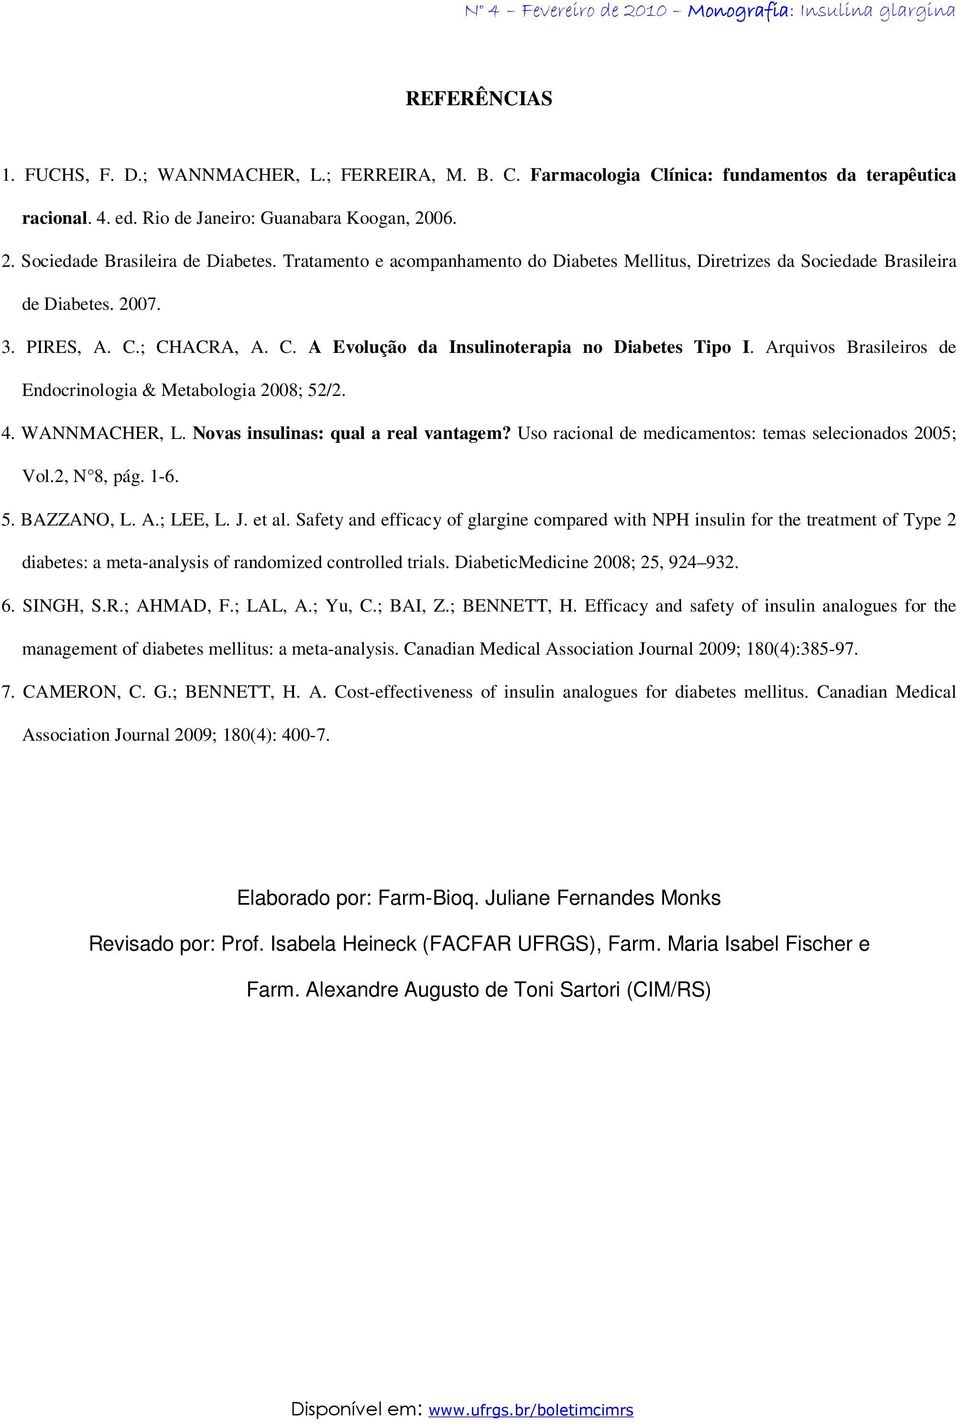 Arquivos Brasileiros de Endocrinologia & Metabologia 2008; 52/2. 4. WANNMACHER, L. Novas insulinas: qual a real vantagem? Uso racional de medicamentos: temas selecionados 2005; Vol.2, N 8, pág. 1-6.